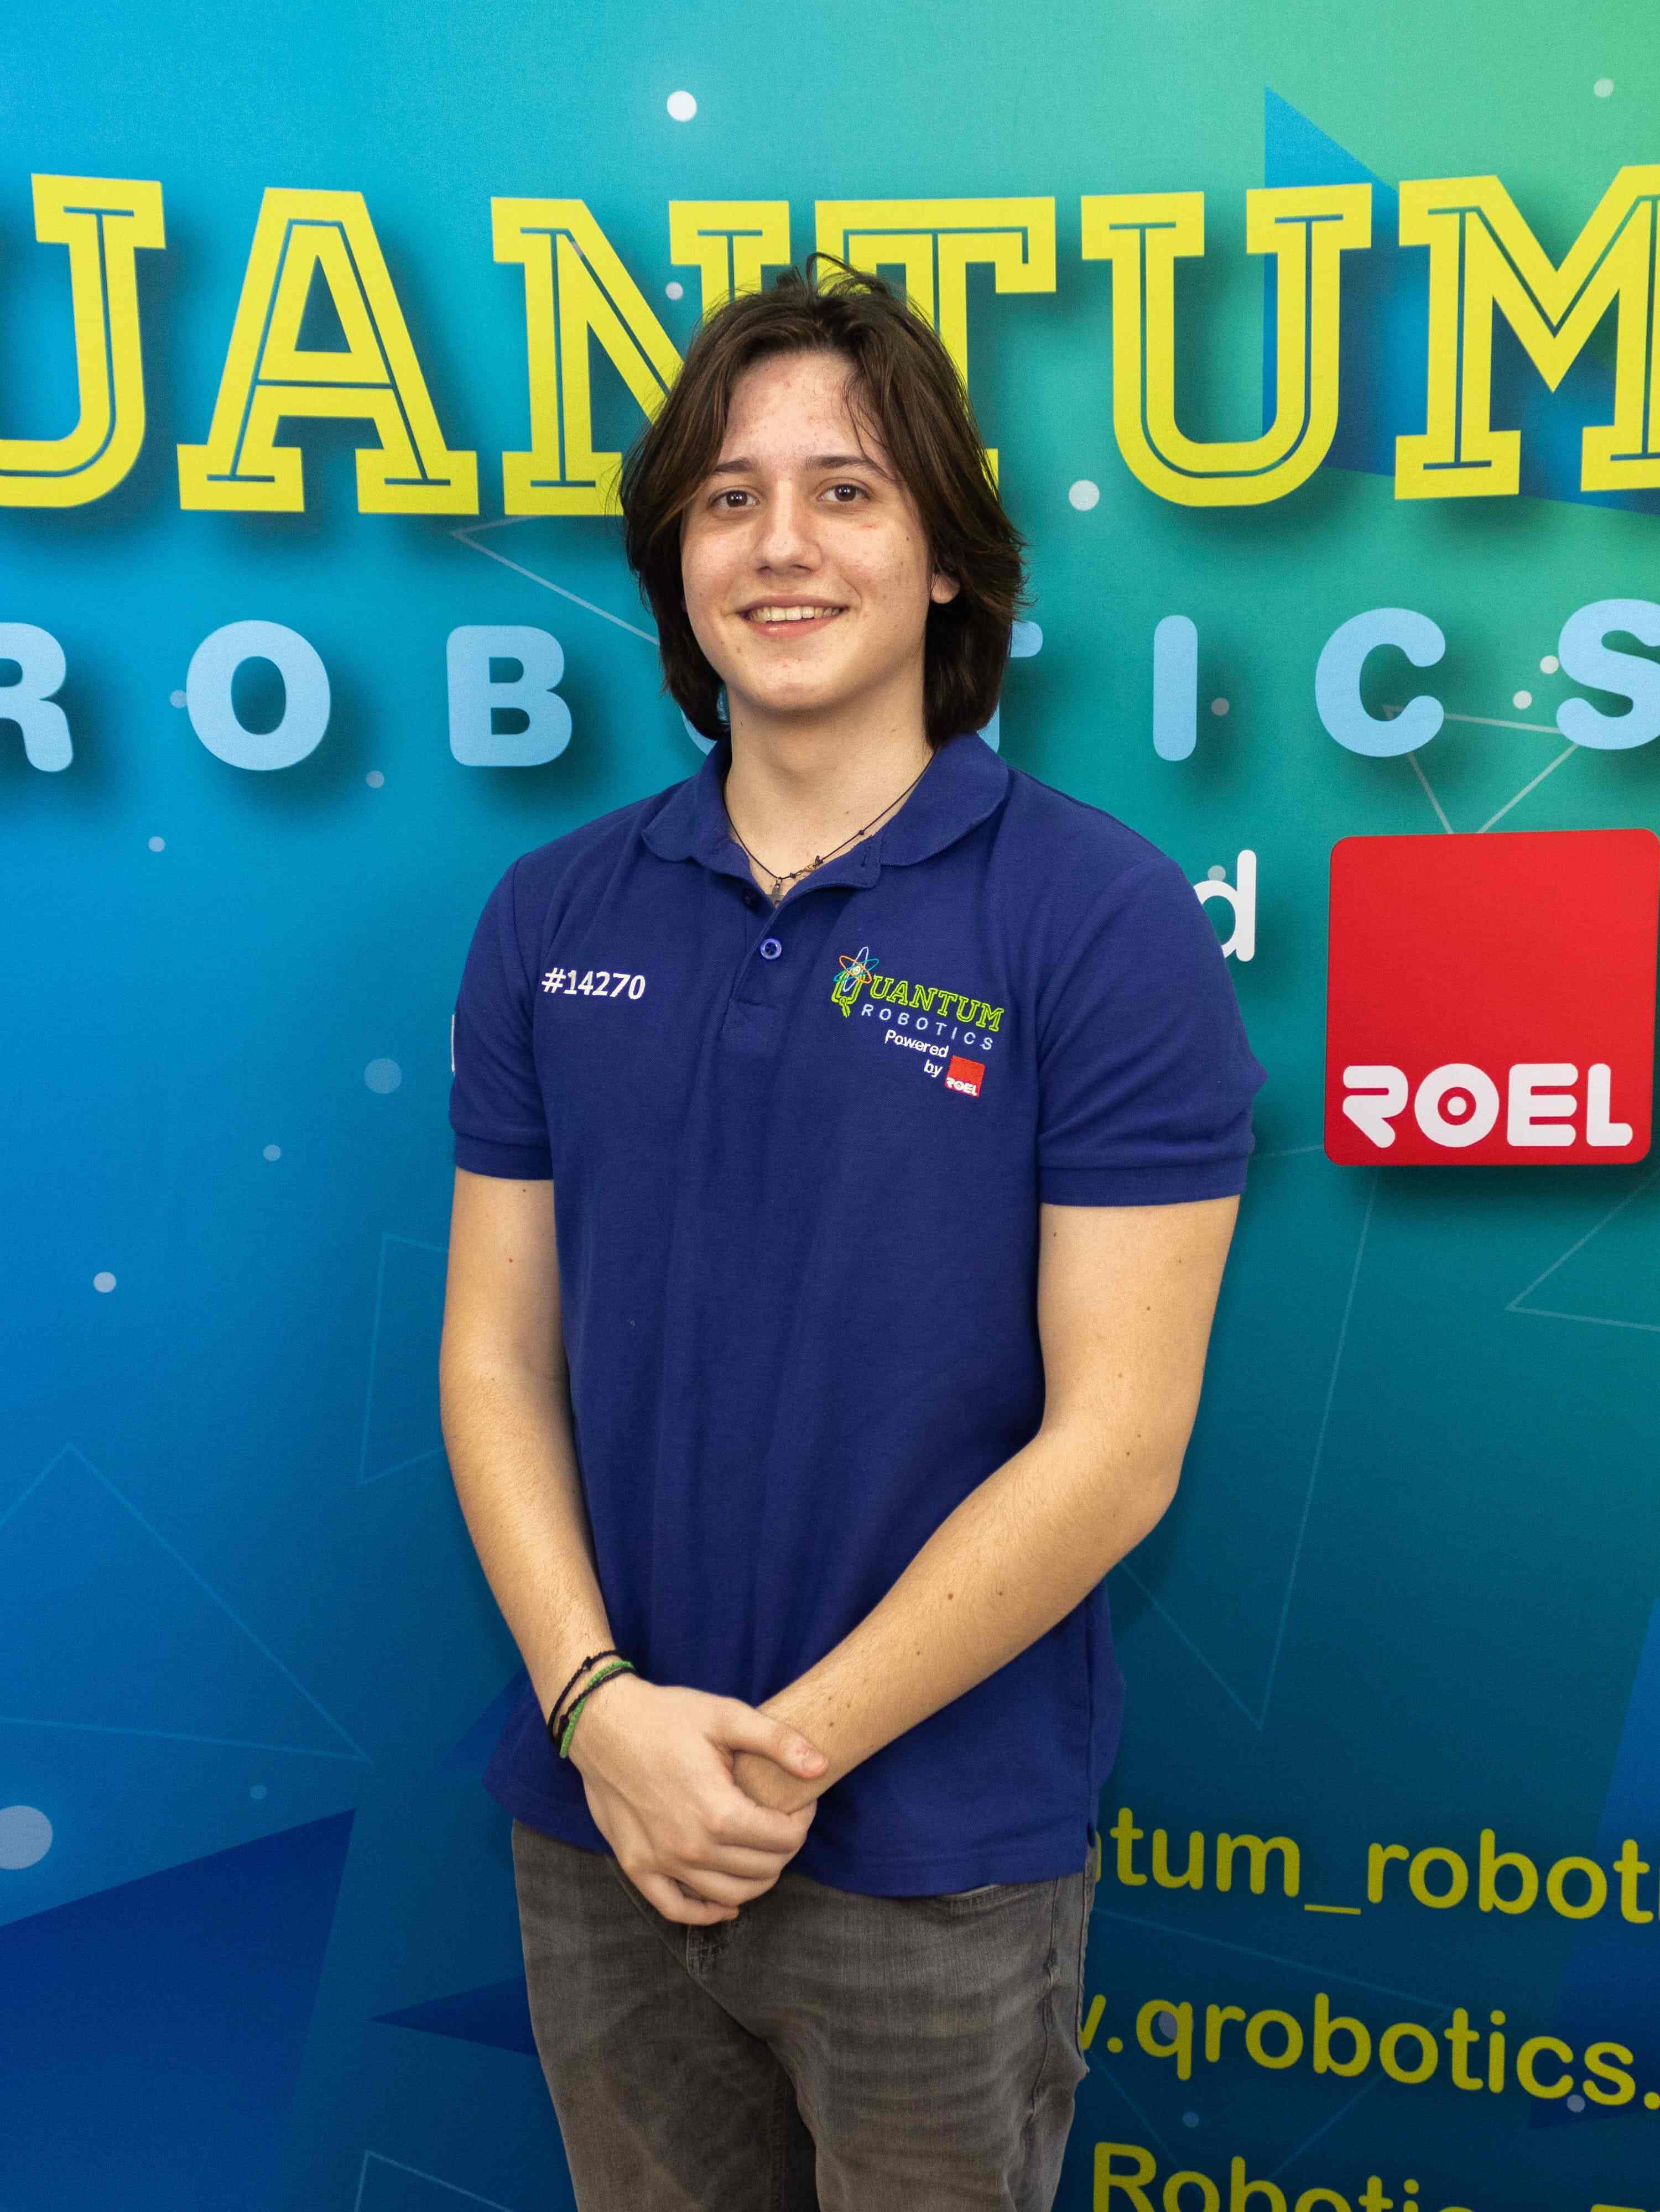 Quantum-Robotics-FTC-FIRST-competiton-team-members-Justin-Stoica